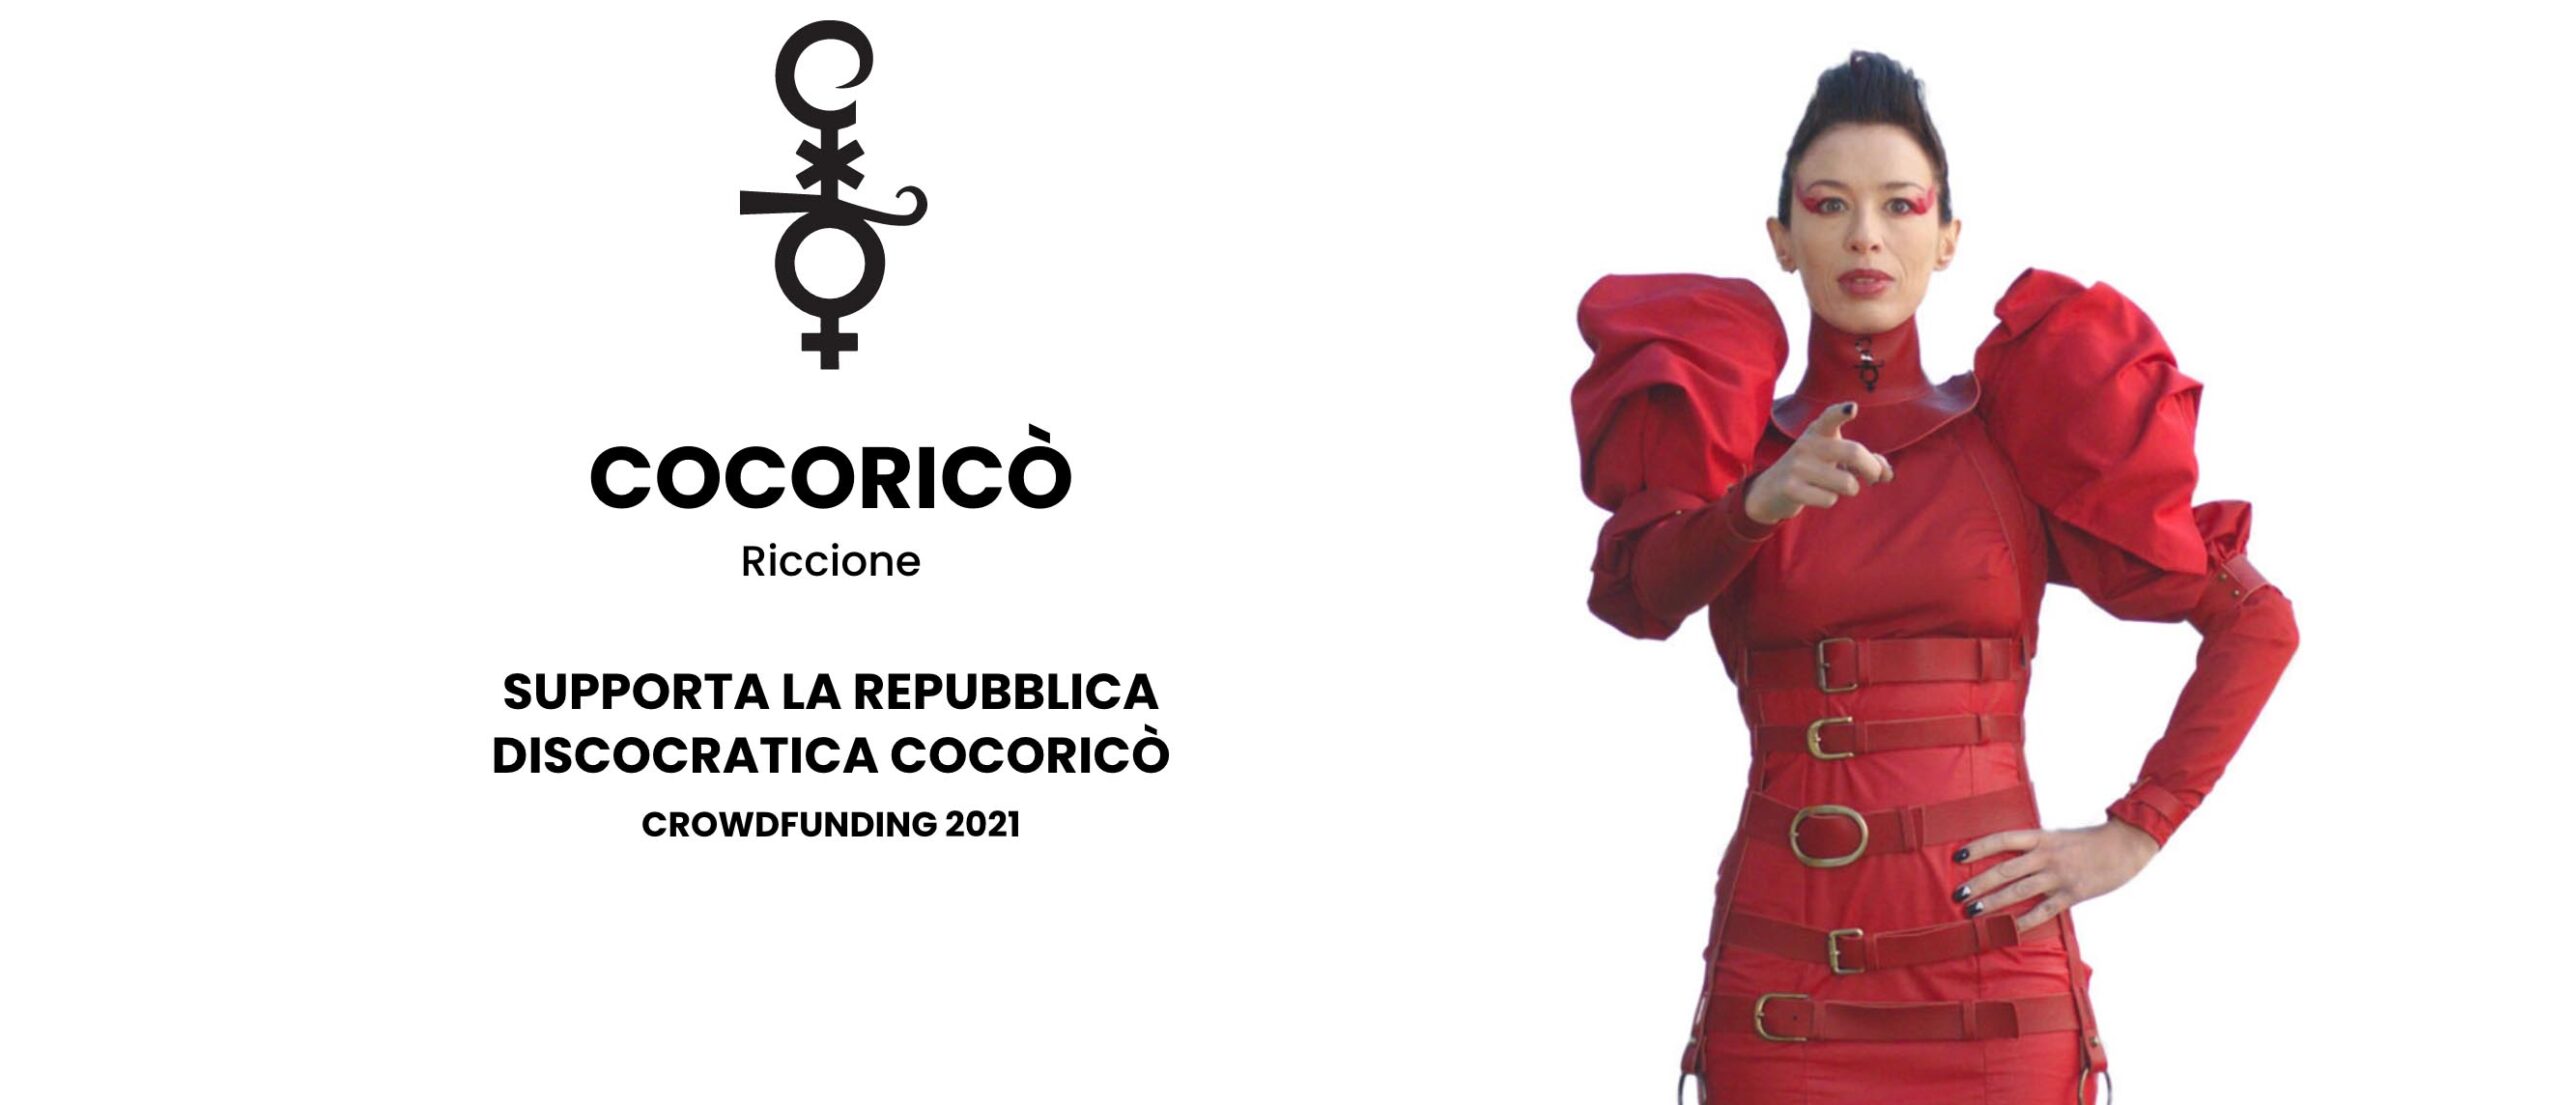 cocorico riccione crowdfunding repubblica discogratica